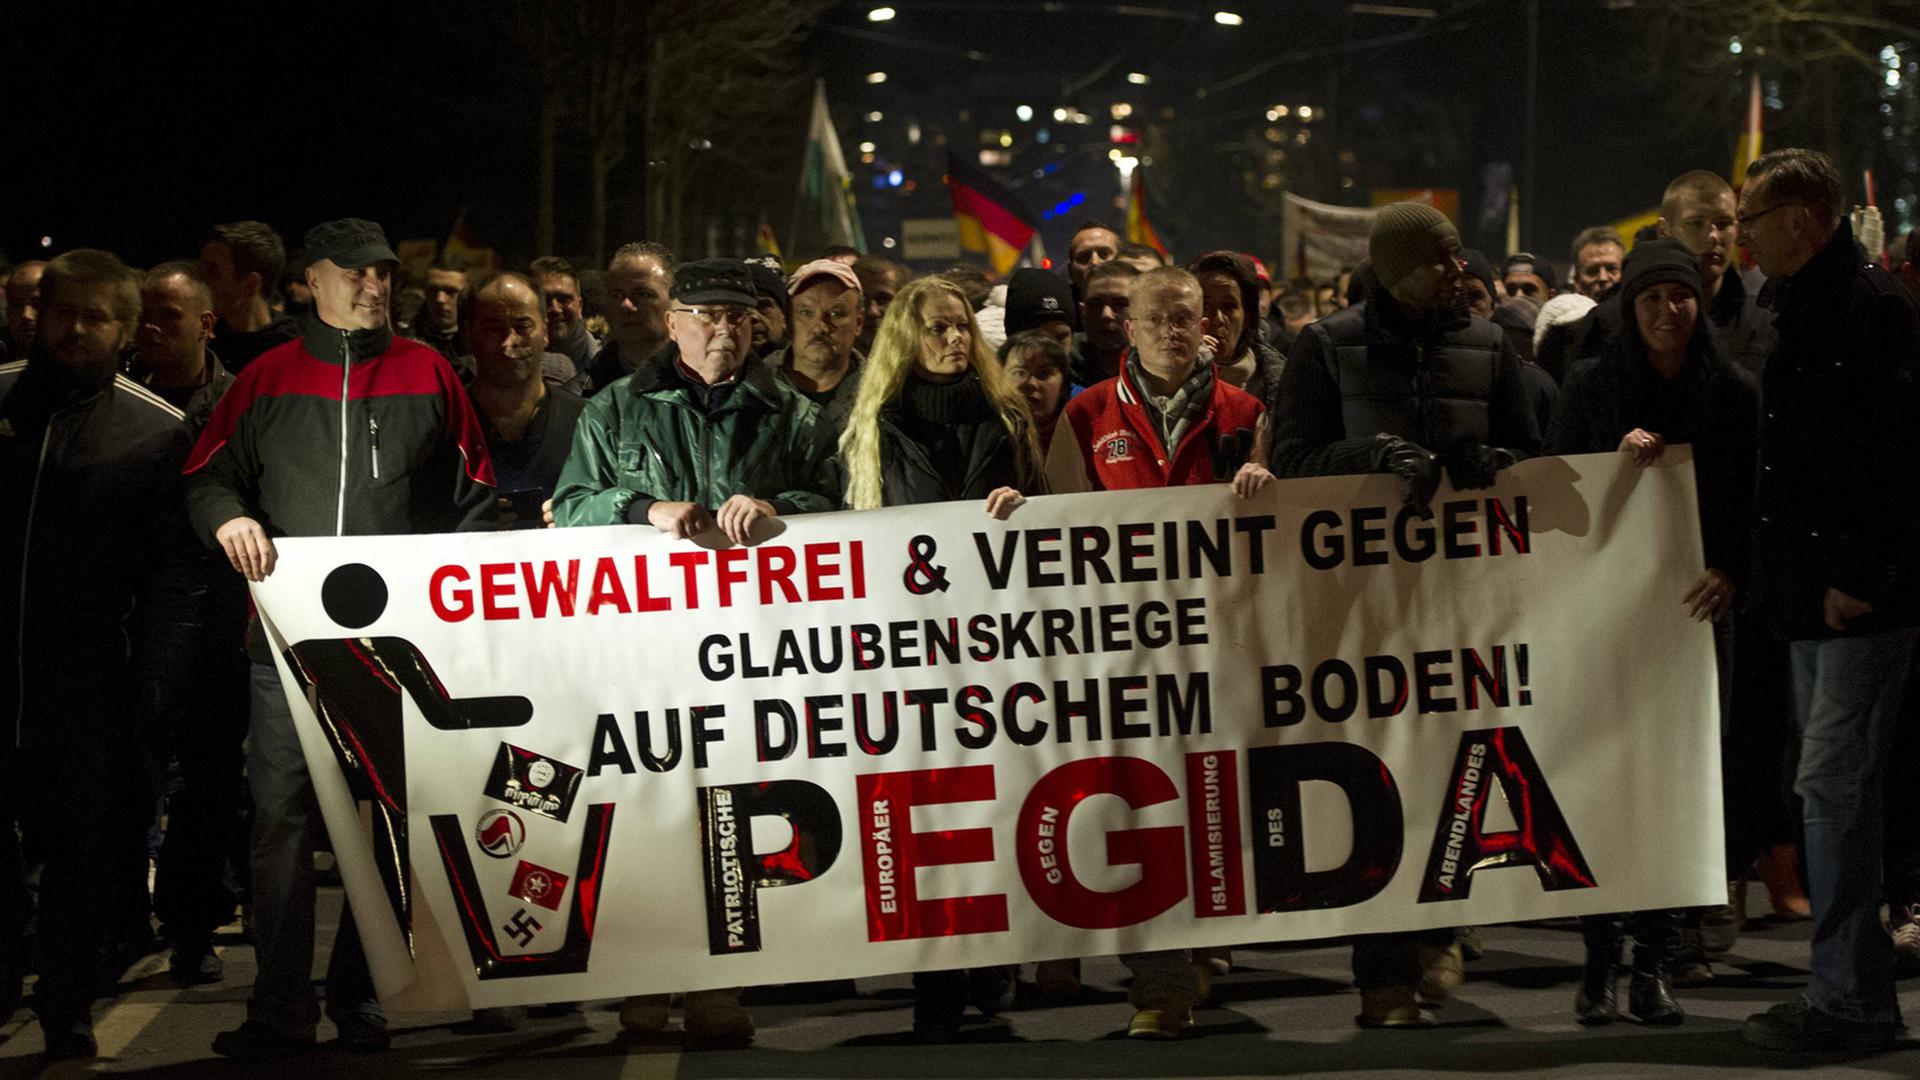 Mehrere Pegida-Demonstranten halten ein Banner mit der Aufschrift "Gewaltfrei und vereint gegen Glaubenskriege auf deutschem Boden!"